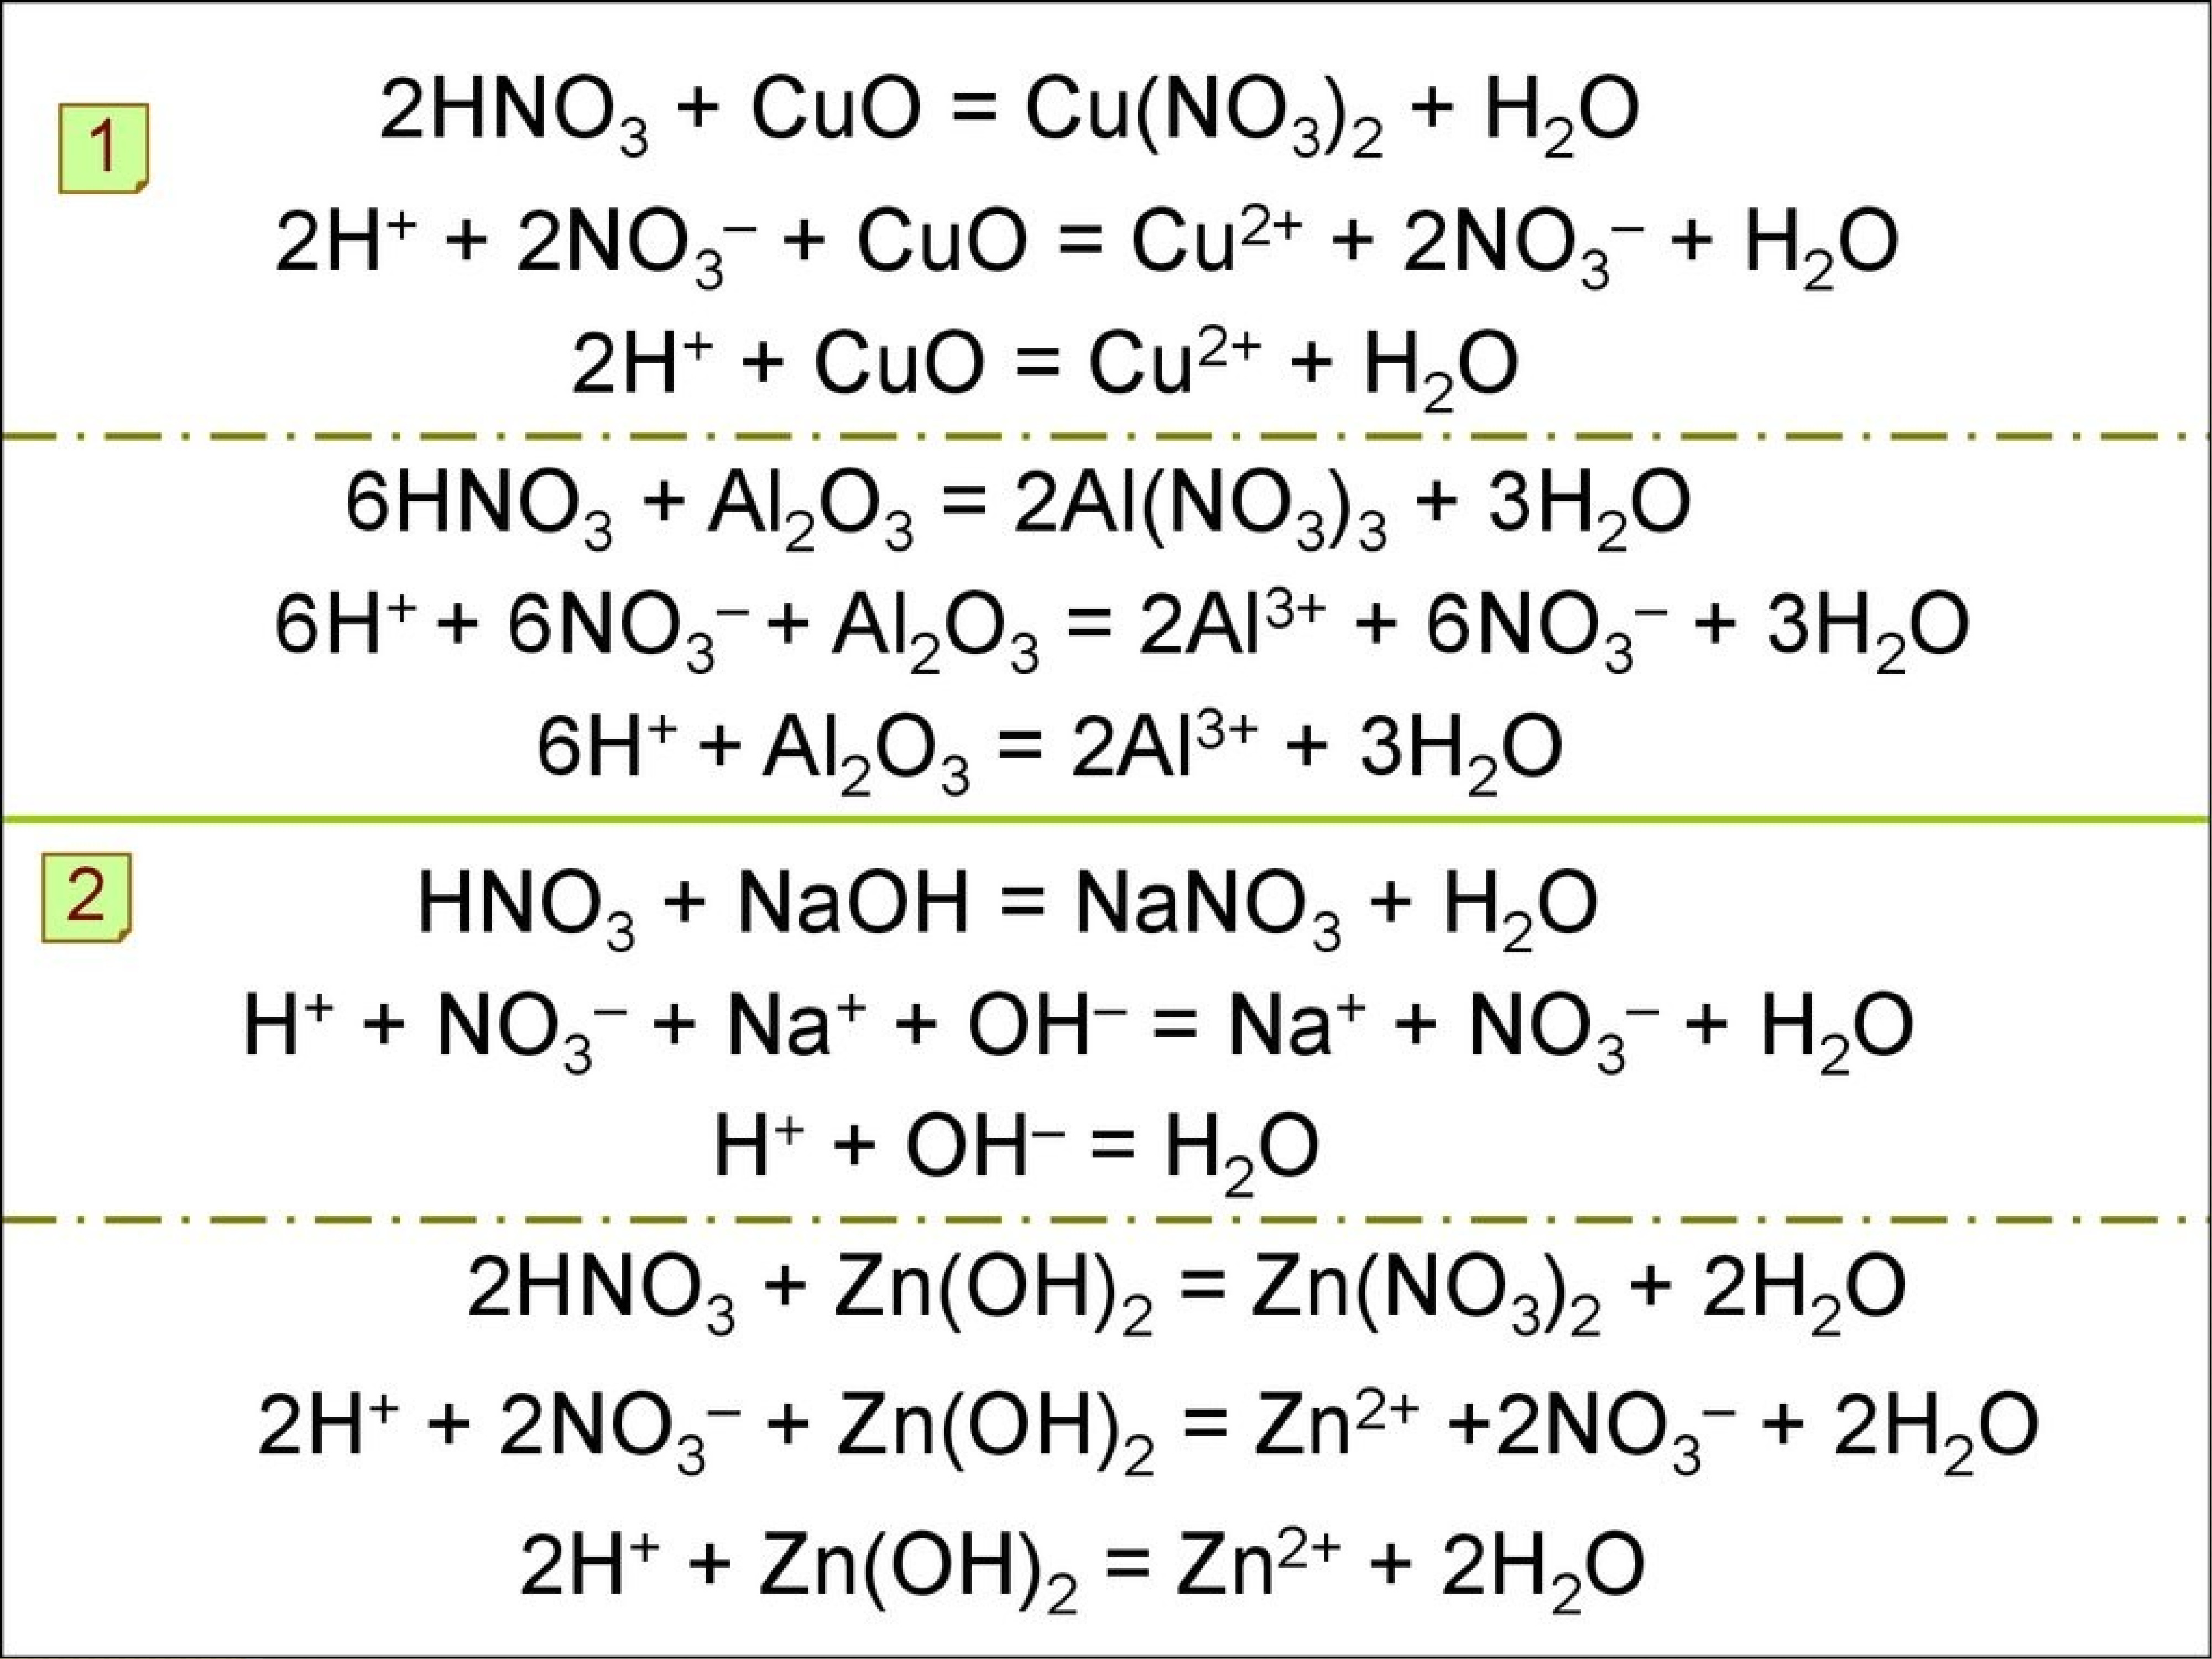 Fe oh 2 n2o3. Al2o3 и азотная кислота. Cu hno3 h2o2. No2 hno2 реакция. Cu no3 Cuo no2 o2 коэффициенты.